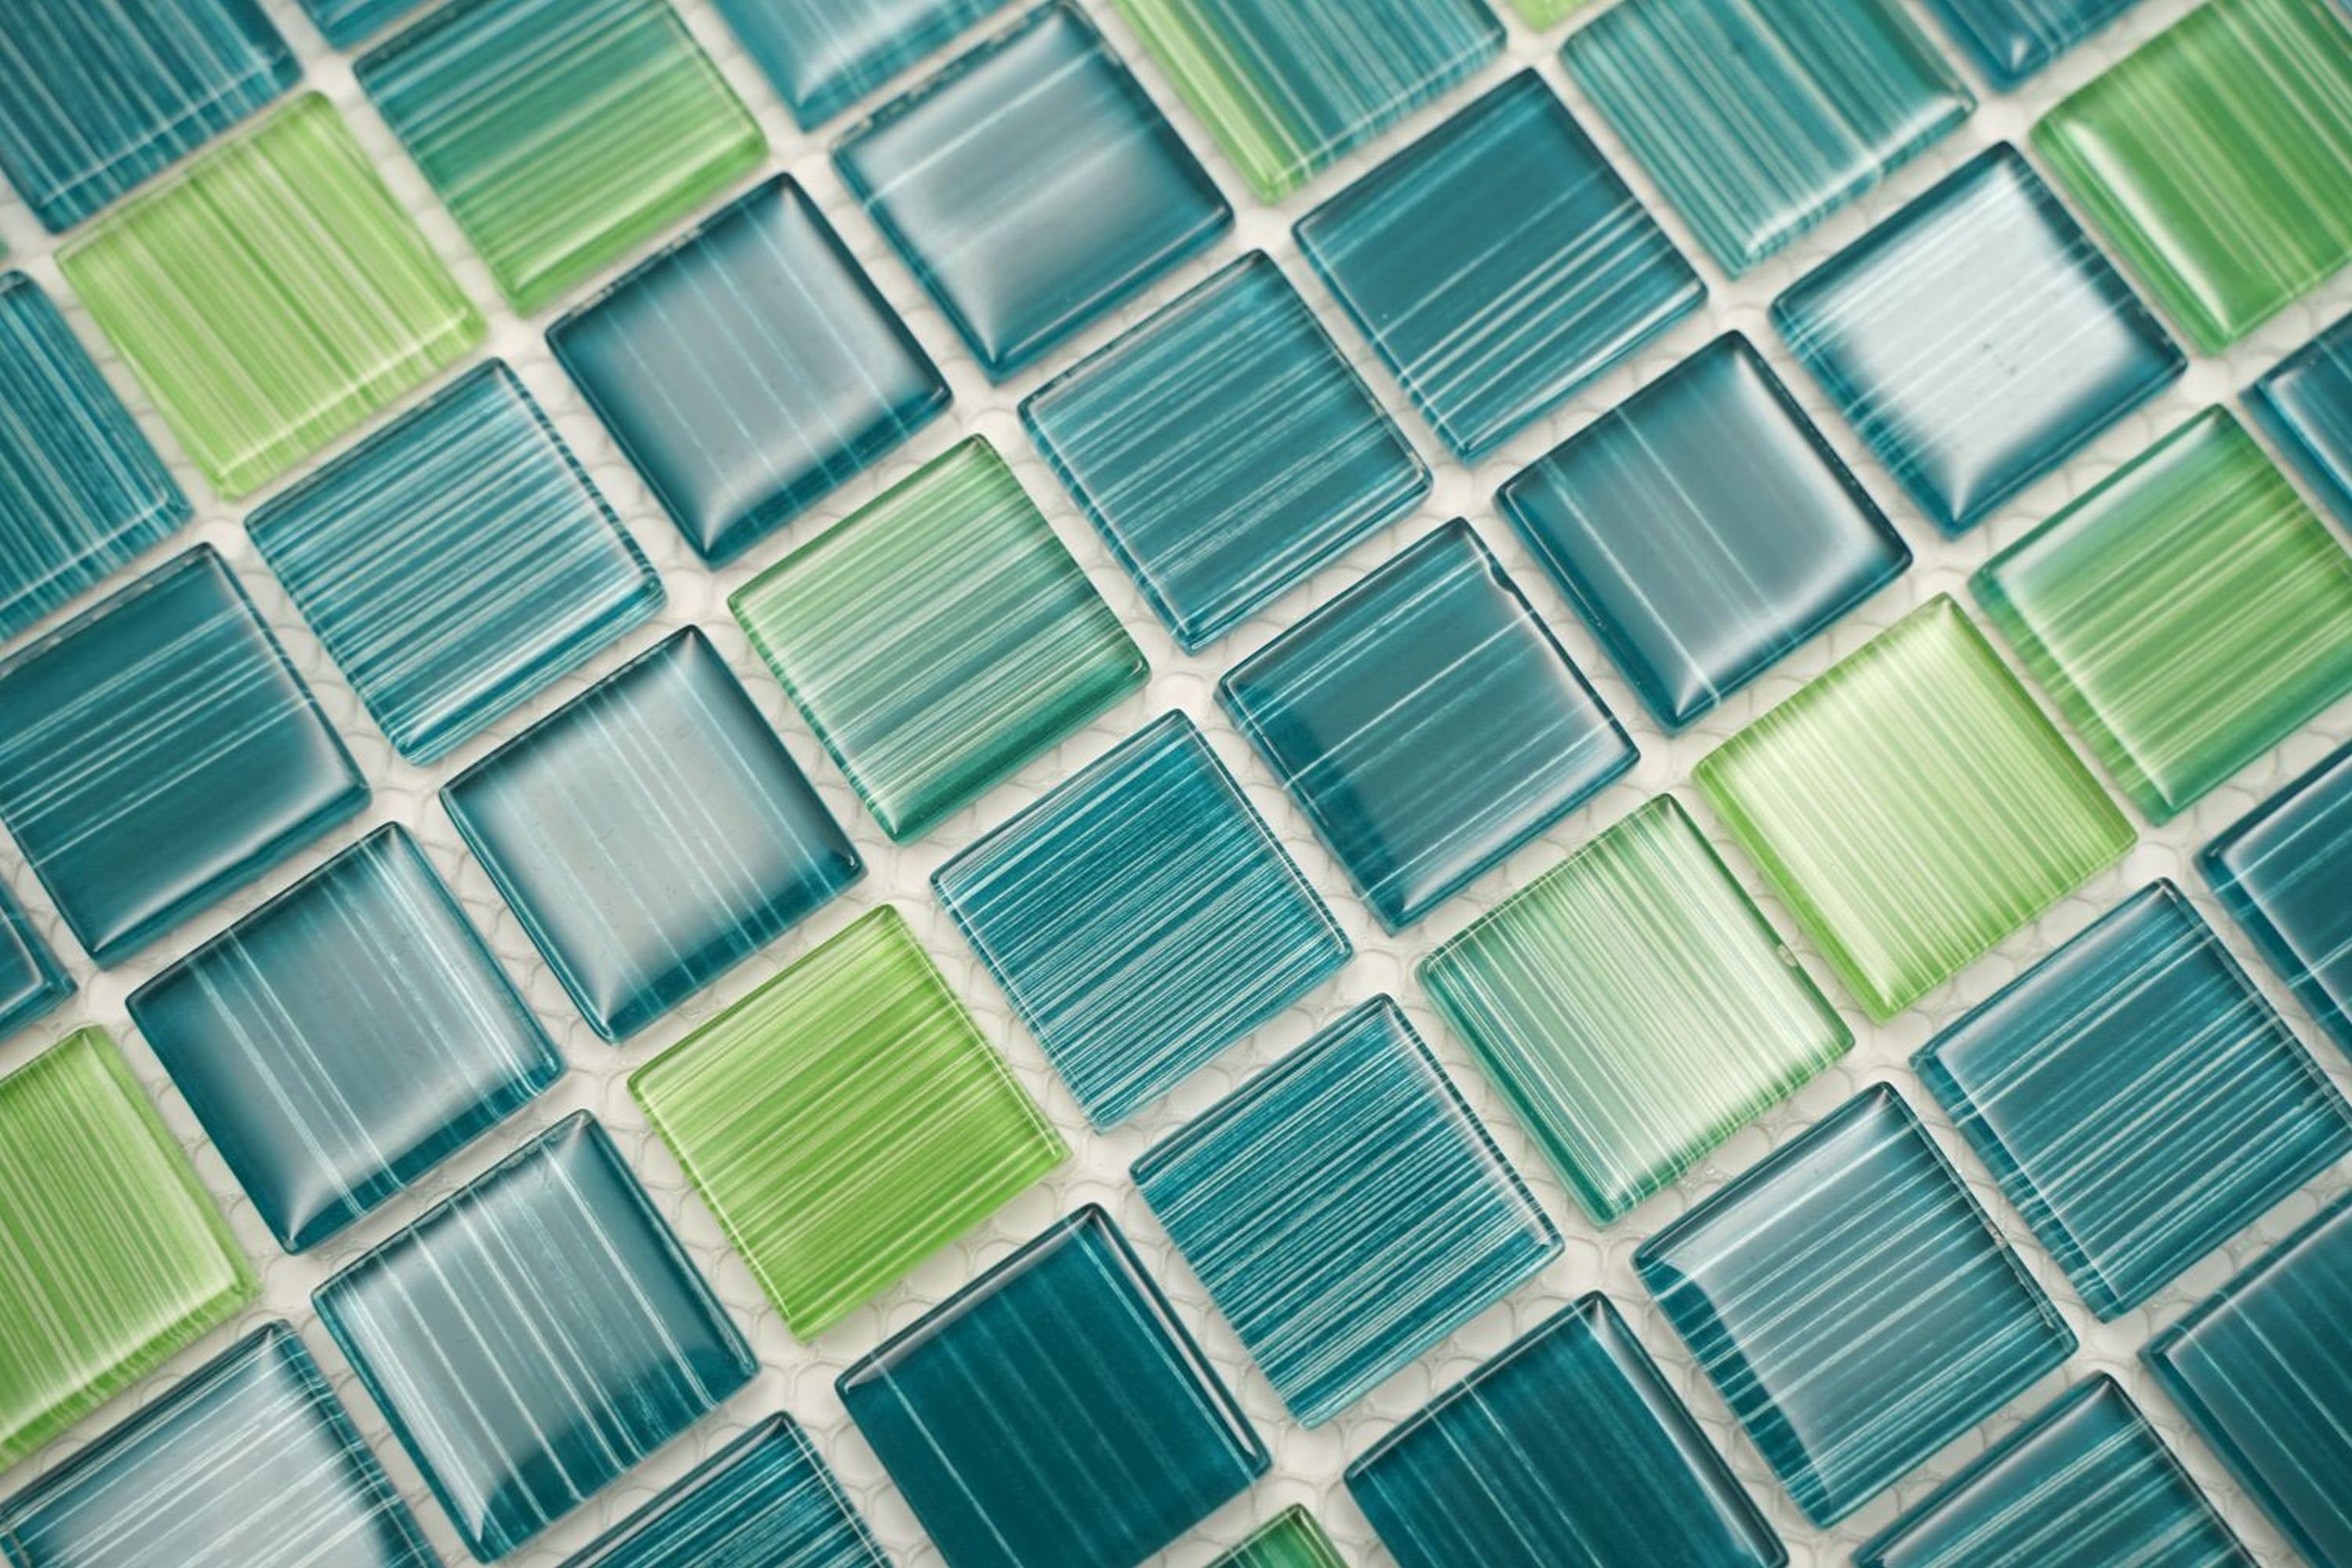 Mosani Mosaikfliesen Glasmosaik Mosaikfliesen Strich Schwimmbadmosaik grün türkis gelb